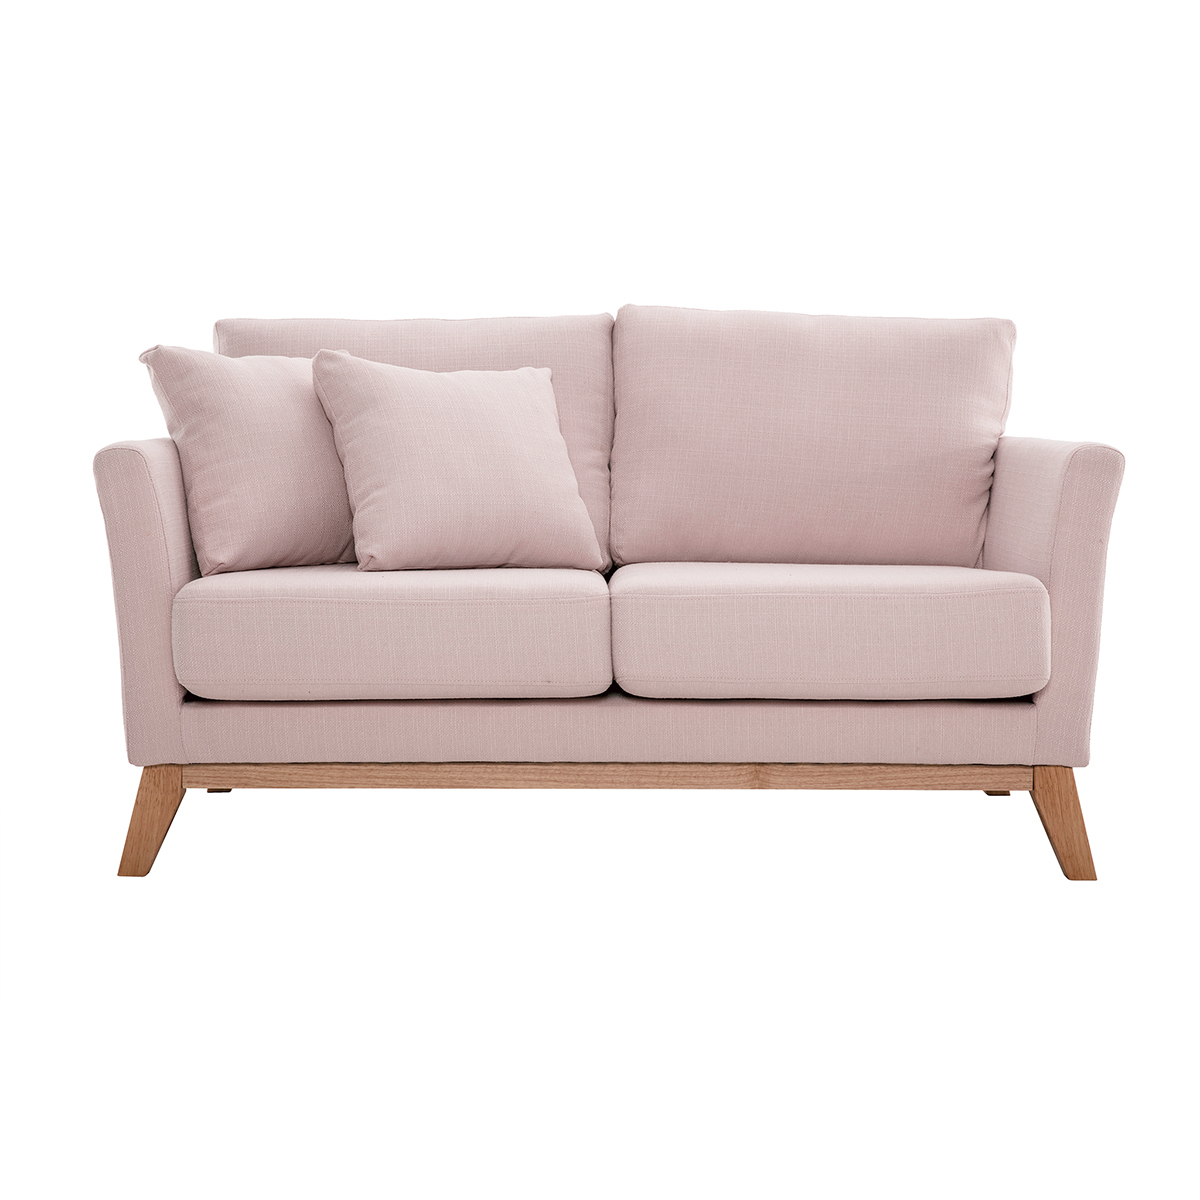 Canapé scandinave déhoussable 2 places en tissu rose et bois clair OSLO vue1